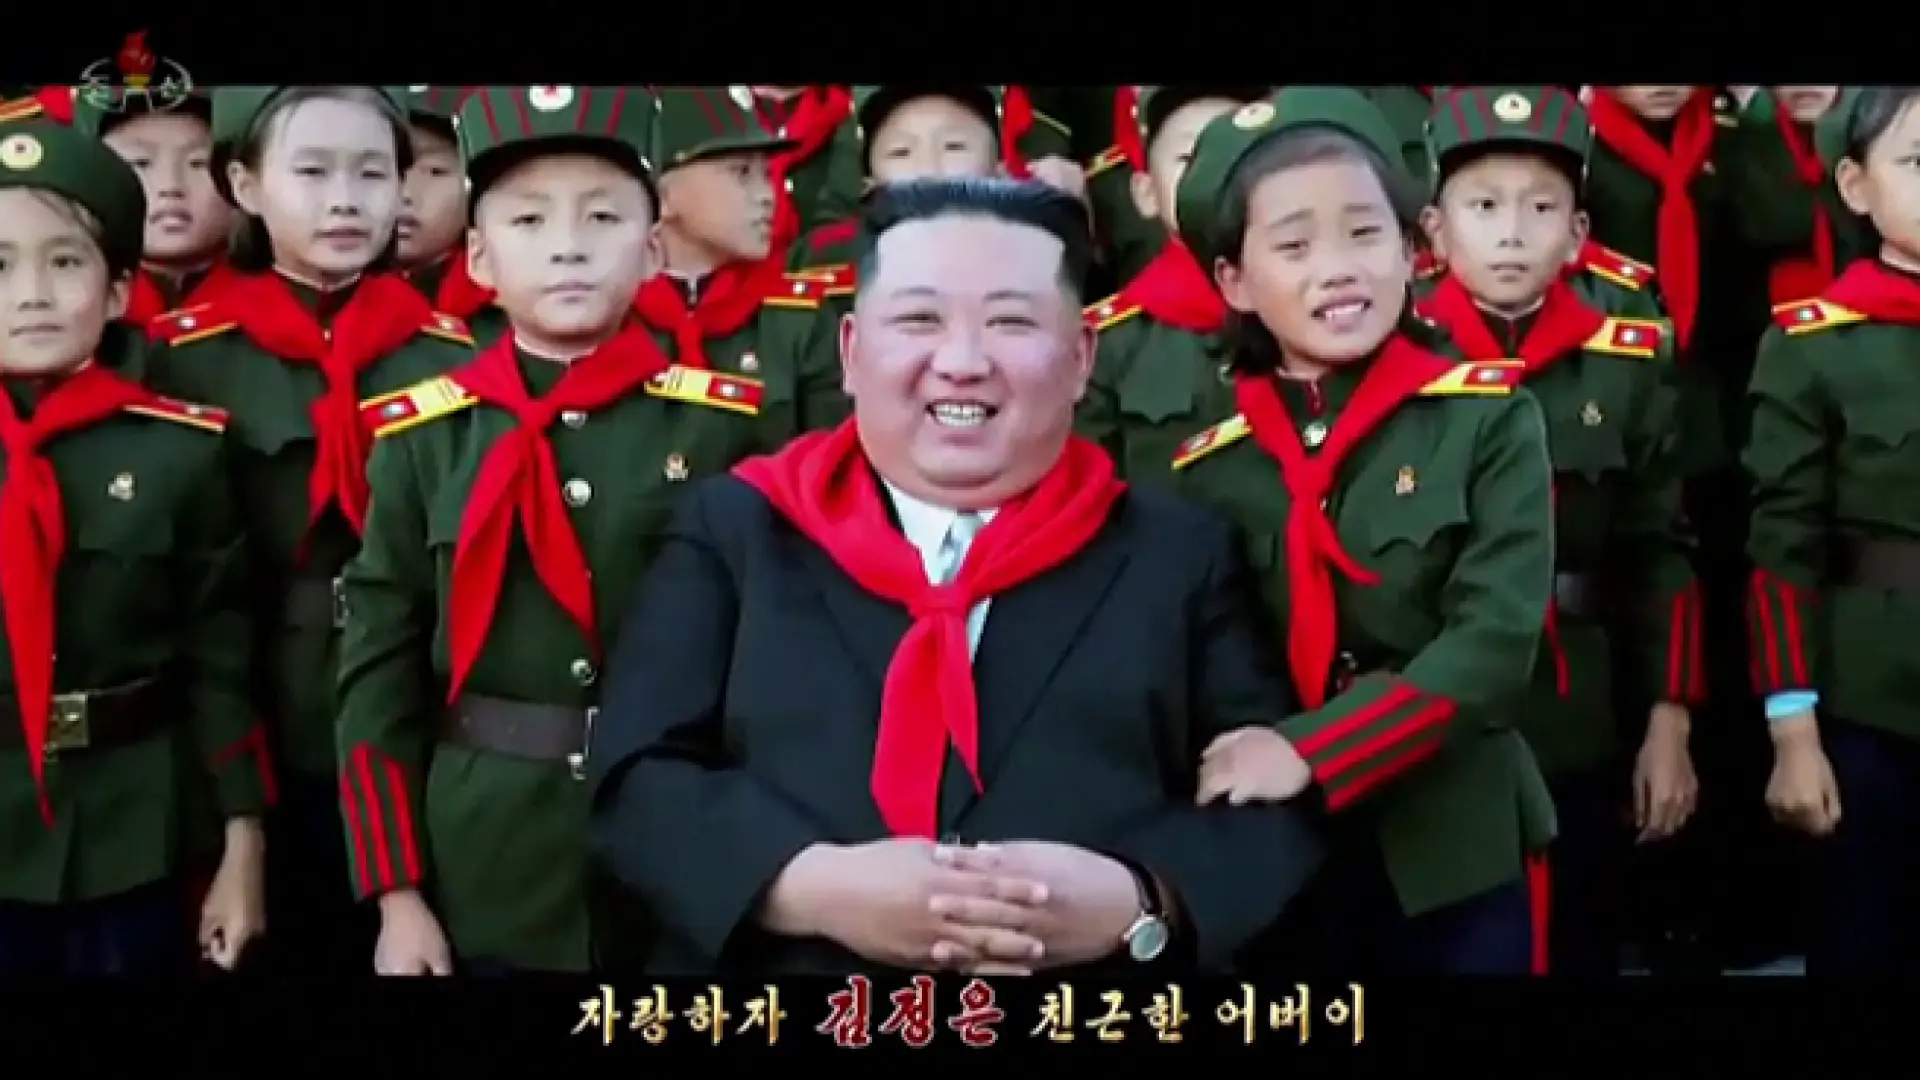 El último éxito musical en Corea del Norte es este surrealista vídeo de Kim Jong-un